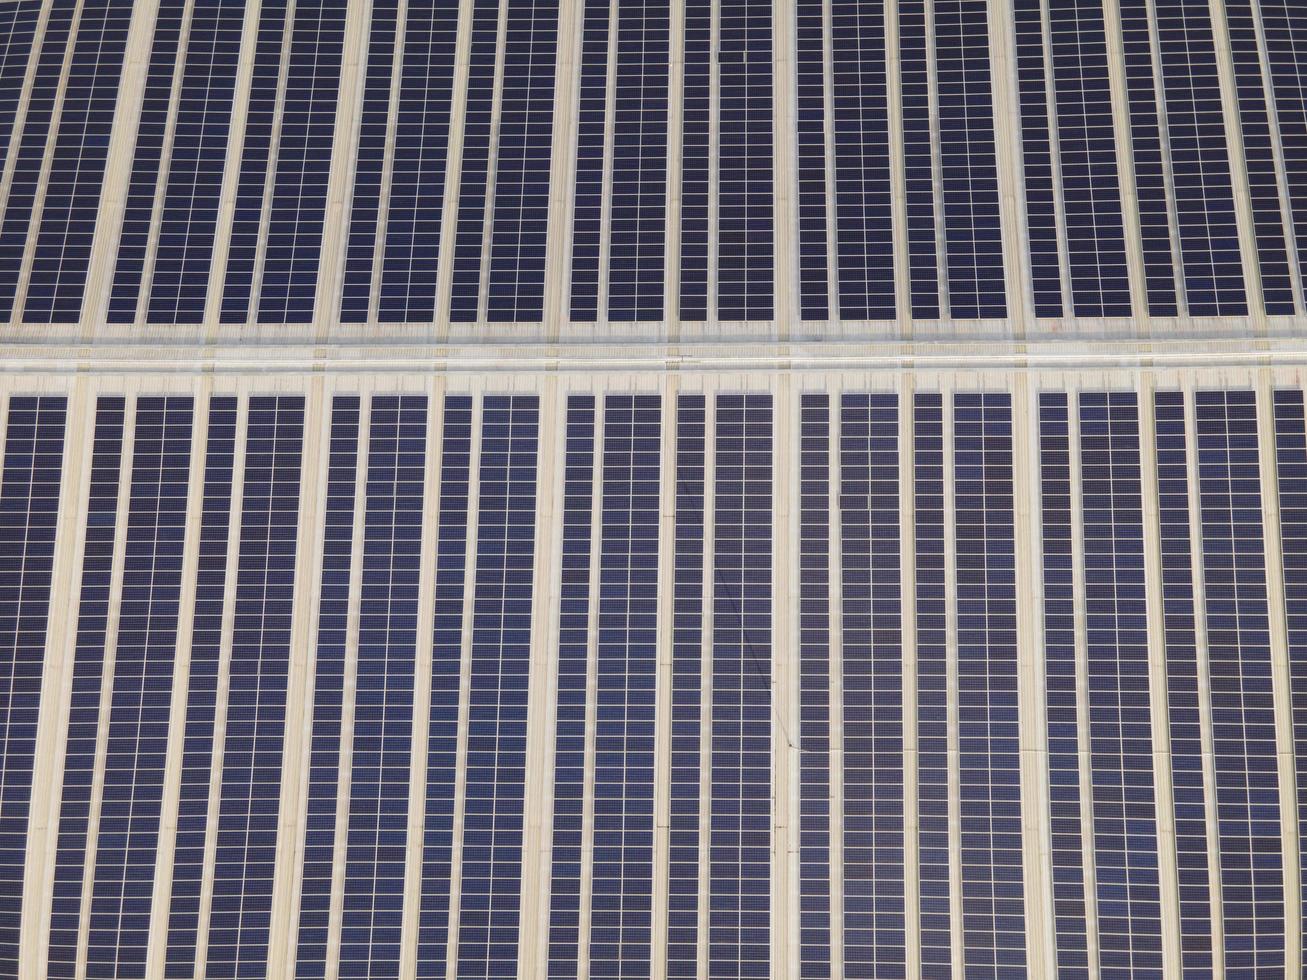 Drohnenbild aus der Luft von Sonnenkollektoren, die auf dem Dach eines großen Industriegebäudes oder einer Lagerhalle installiert sind. industriegebäude.die erneuerbare energie nachhaltige quellen grüner strom photovoltaik. foto